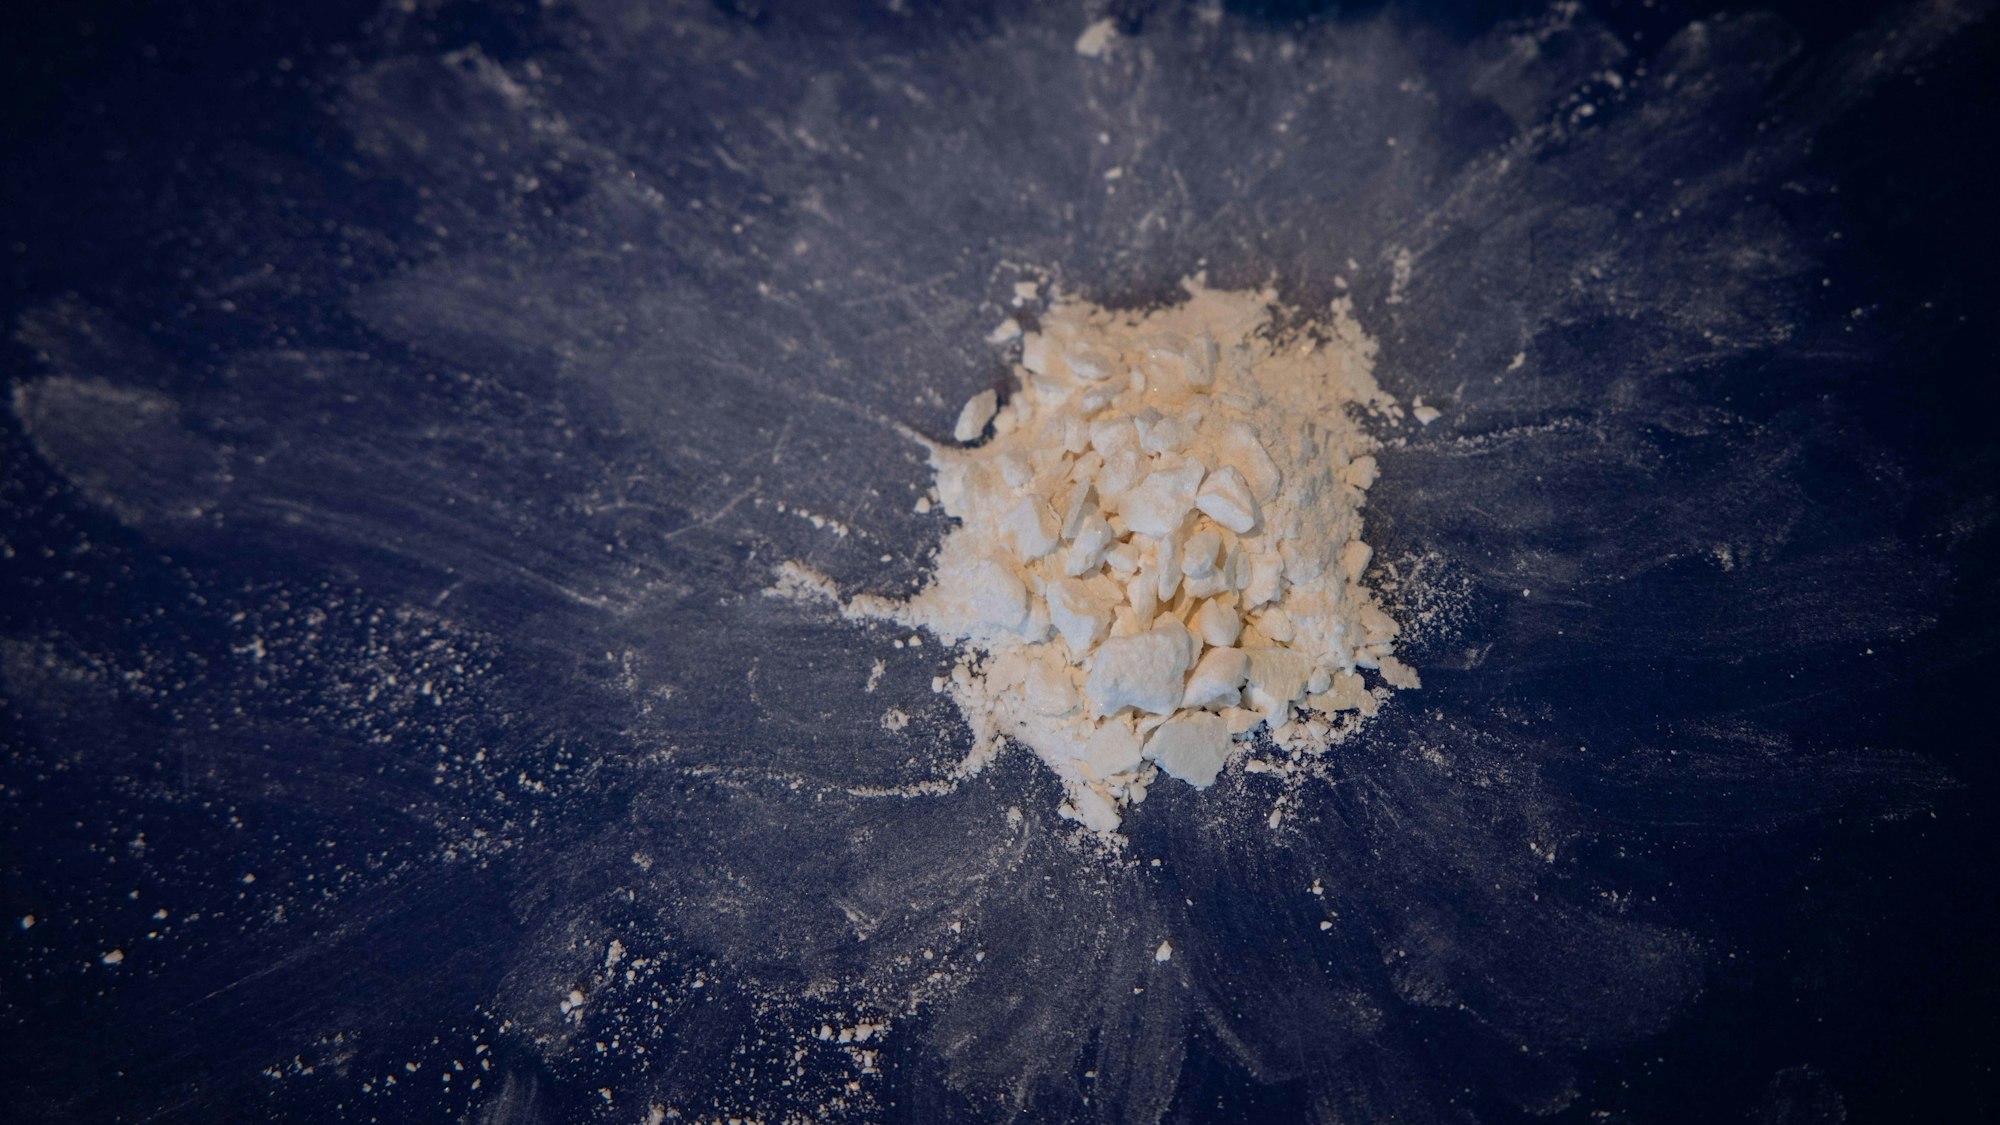 Gepresstes und hoch konzentriertes Kokain aus einem Kokainfund wird im Rahmen einer Pressekonferenz des Zoll Hamburg gezeigt.